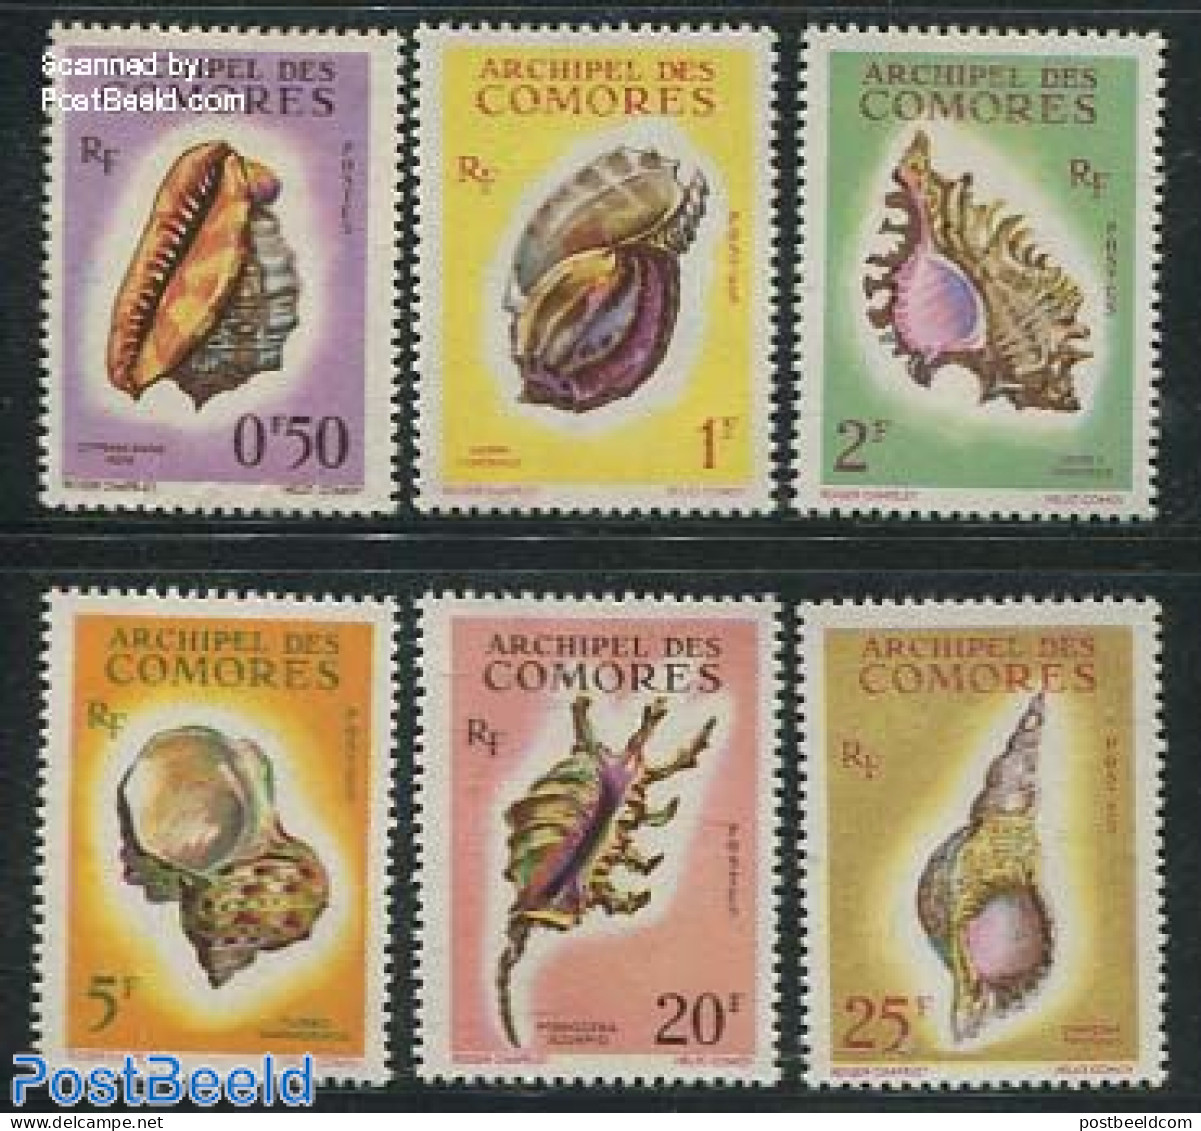 Comoros 1962 Shells 6v, Mint NH, Nature - Shells & Crustaceans - Marine Life